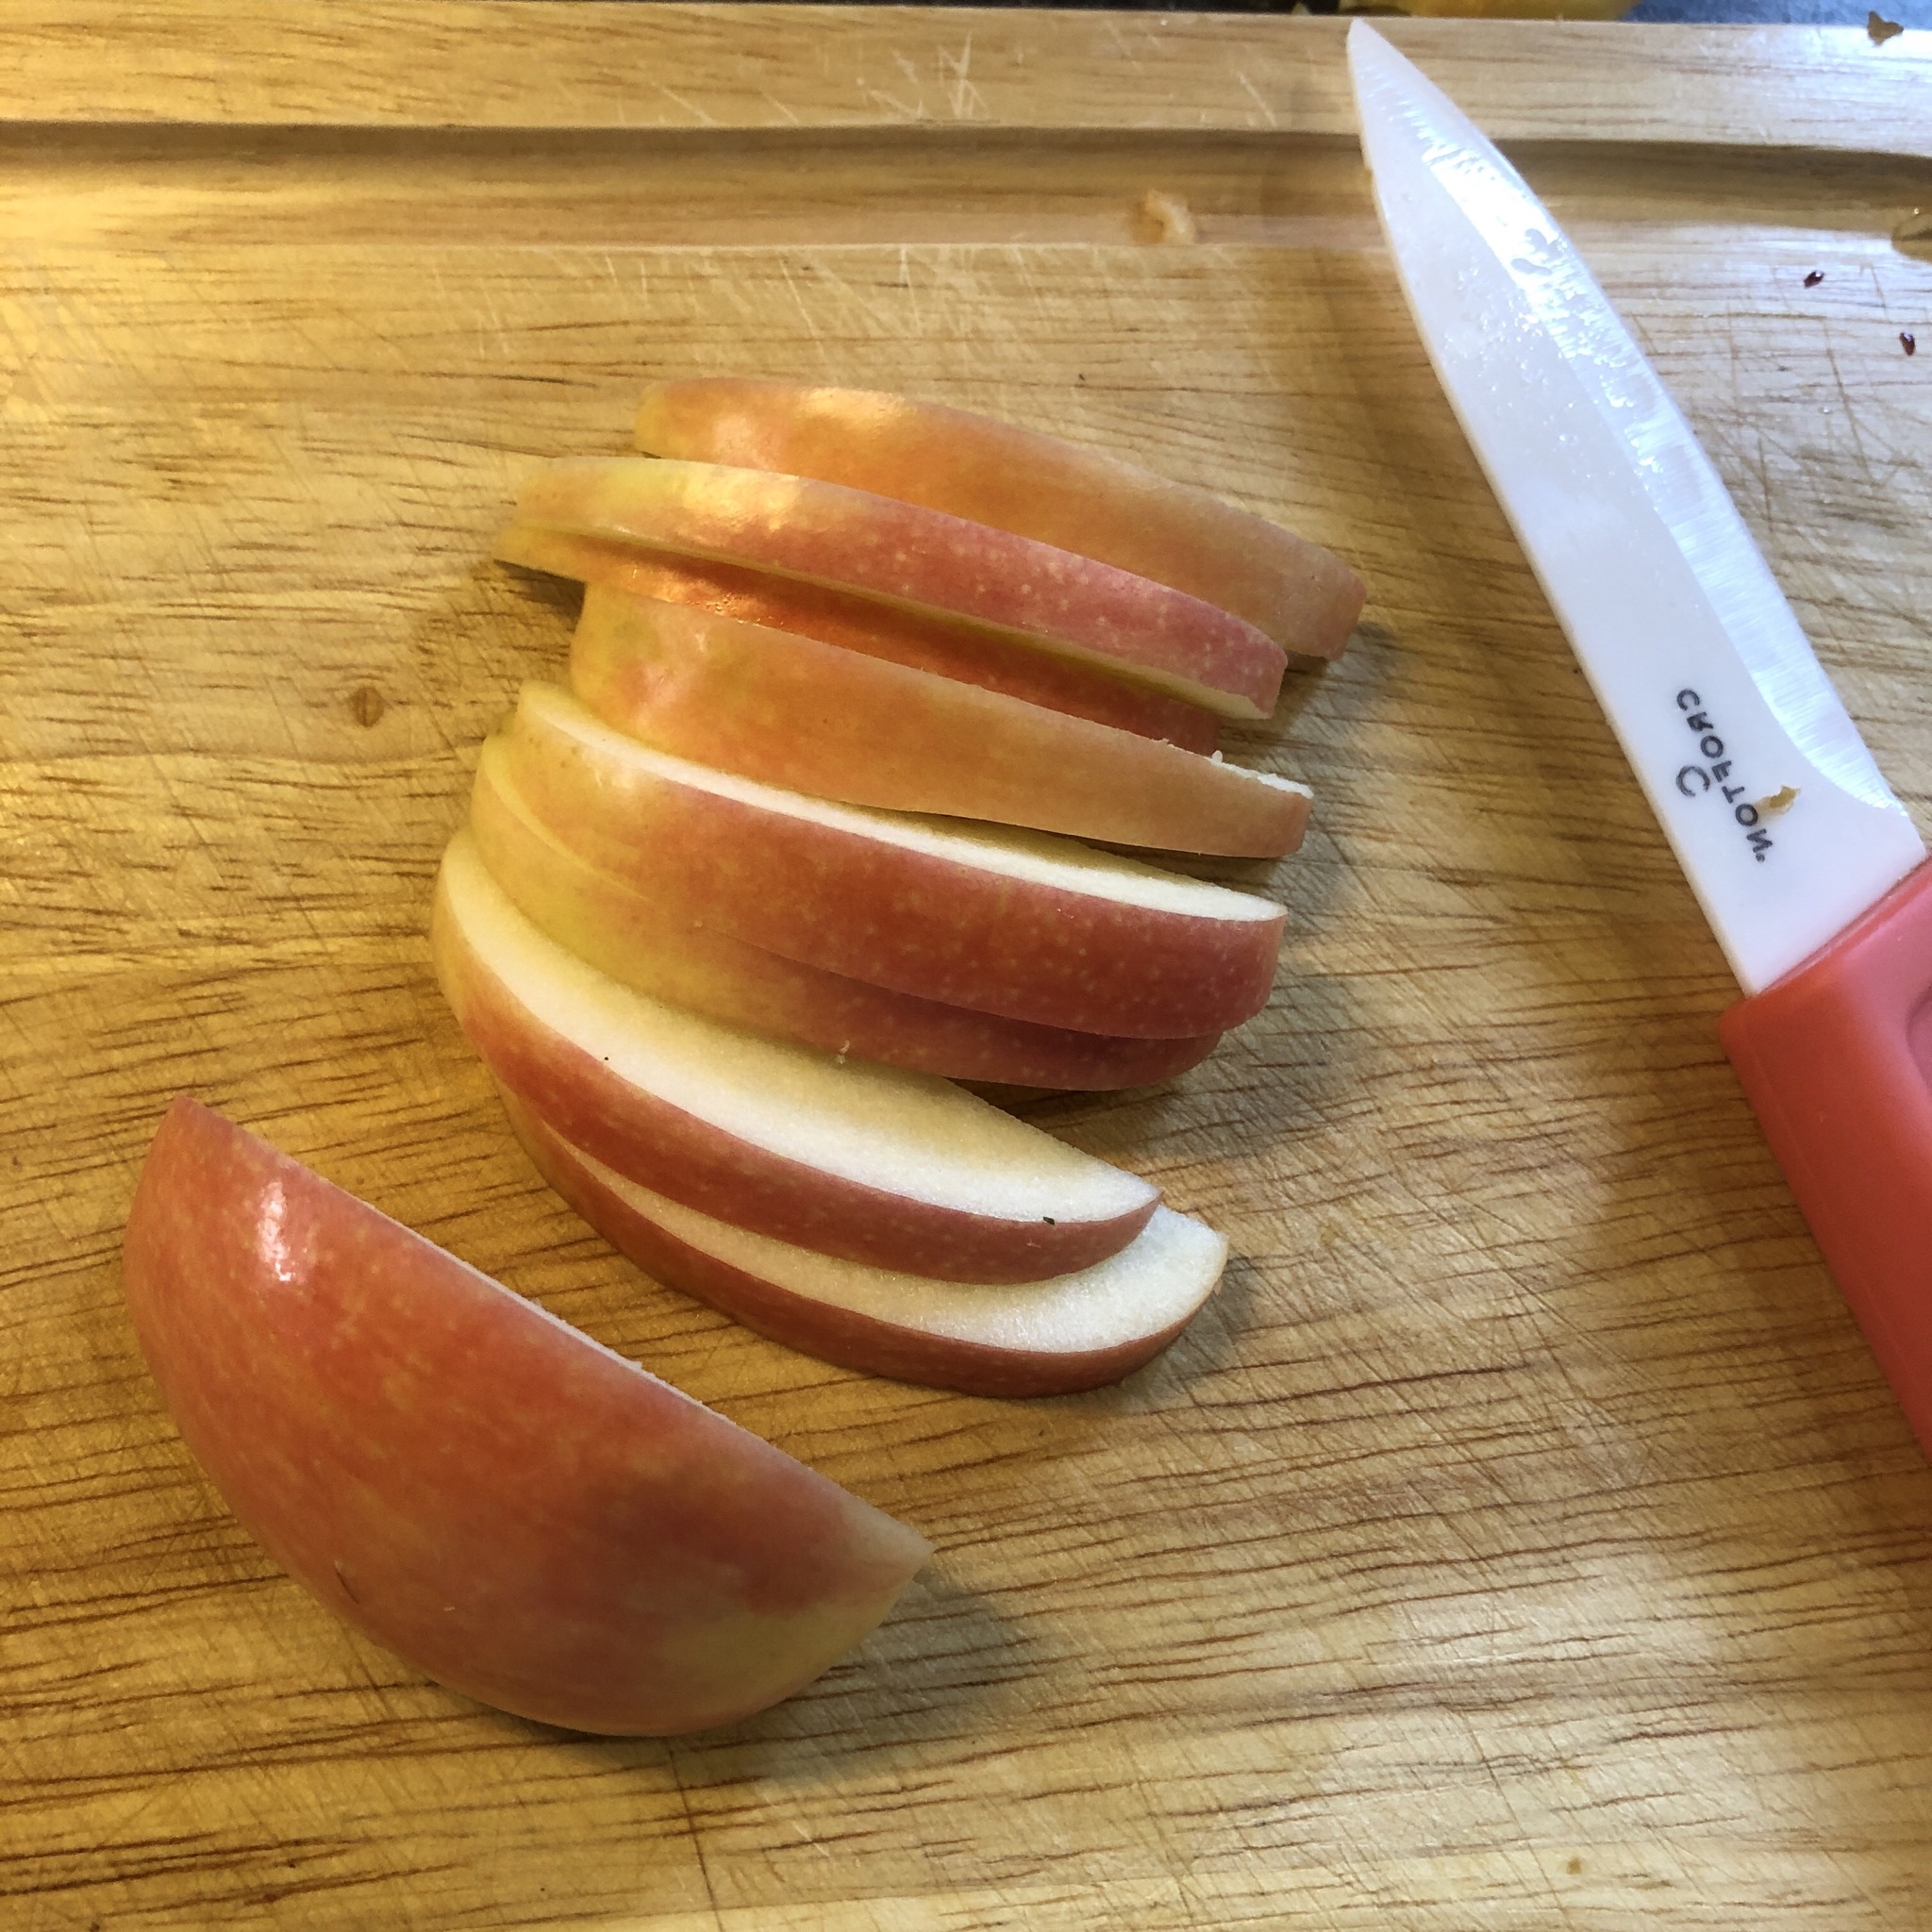 Bild zum Schritt 8 für das Bastel- und DIY-Abenteuer für Kinder: 'Die andere Apfelhälfte wird in dünne Scheiben geschnitten. Diese verwenden...'